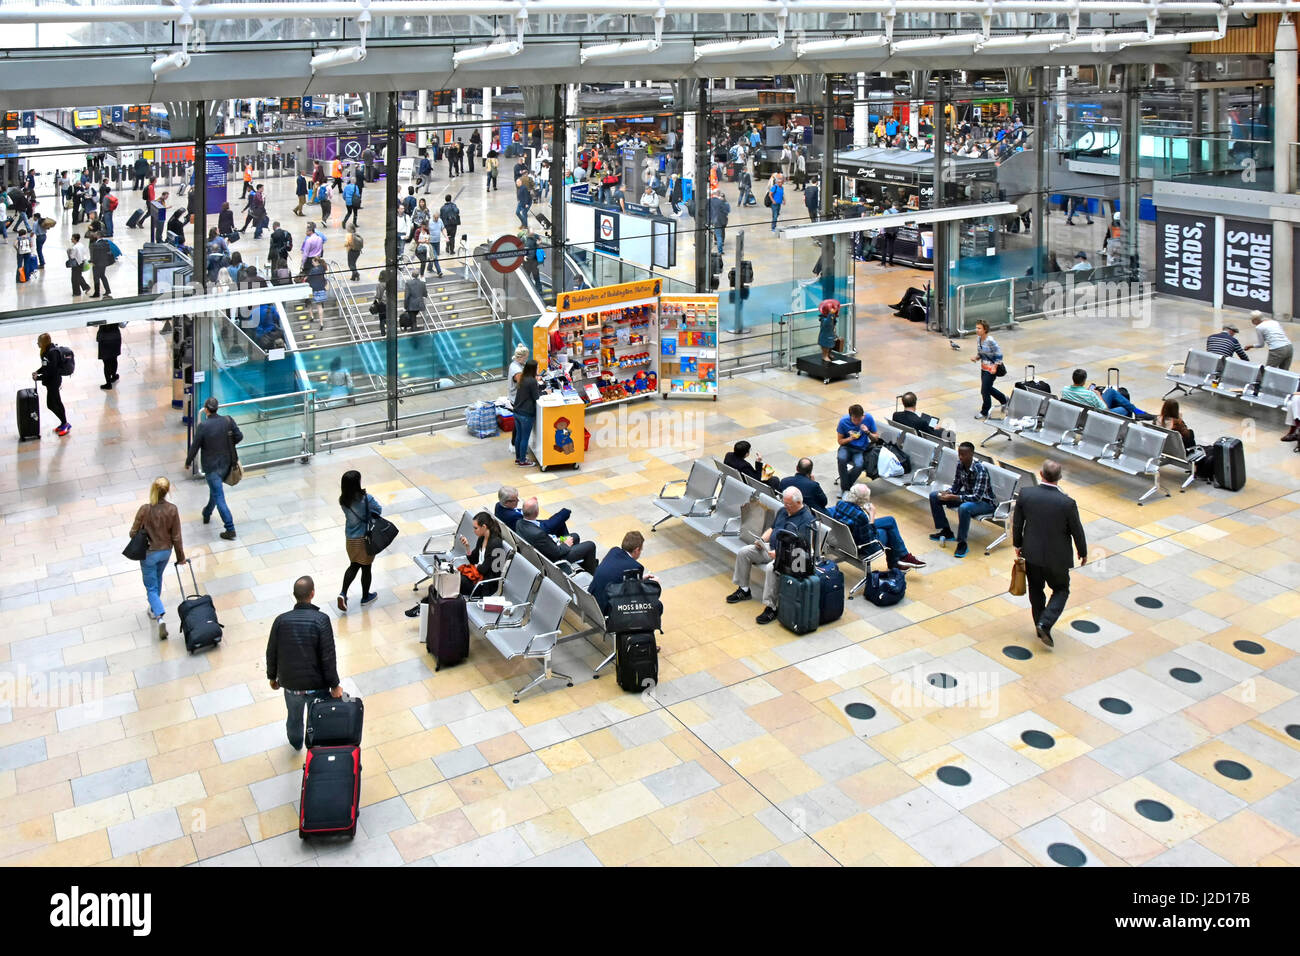 Der Bahnhof London Paddington wird von Network Rail betrieben, die mit Gepäck auf die öffentlichen Verkehrsmittel warten Stockfoto